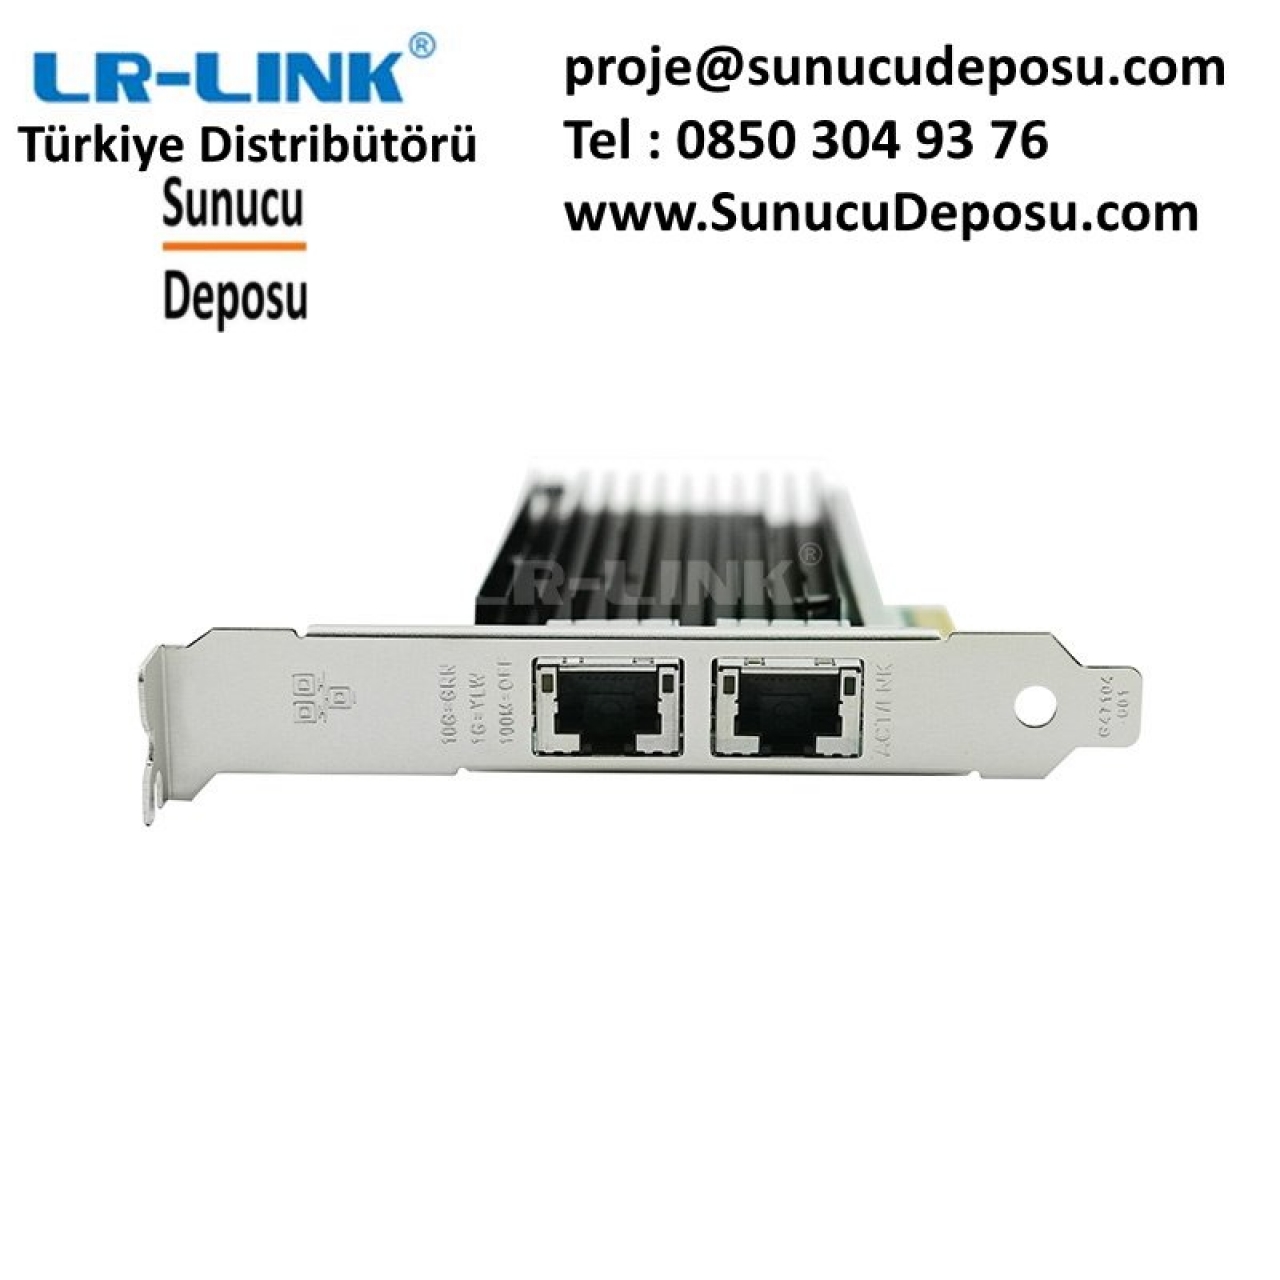 LREC9802BT Dual Port 10GbpsEthernet Kart Intel X540 ChipSet Lr-Link